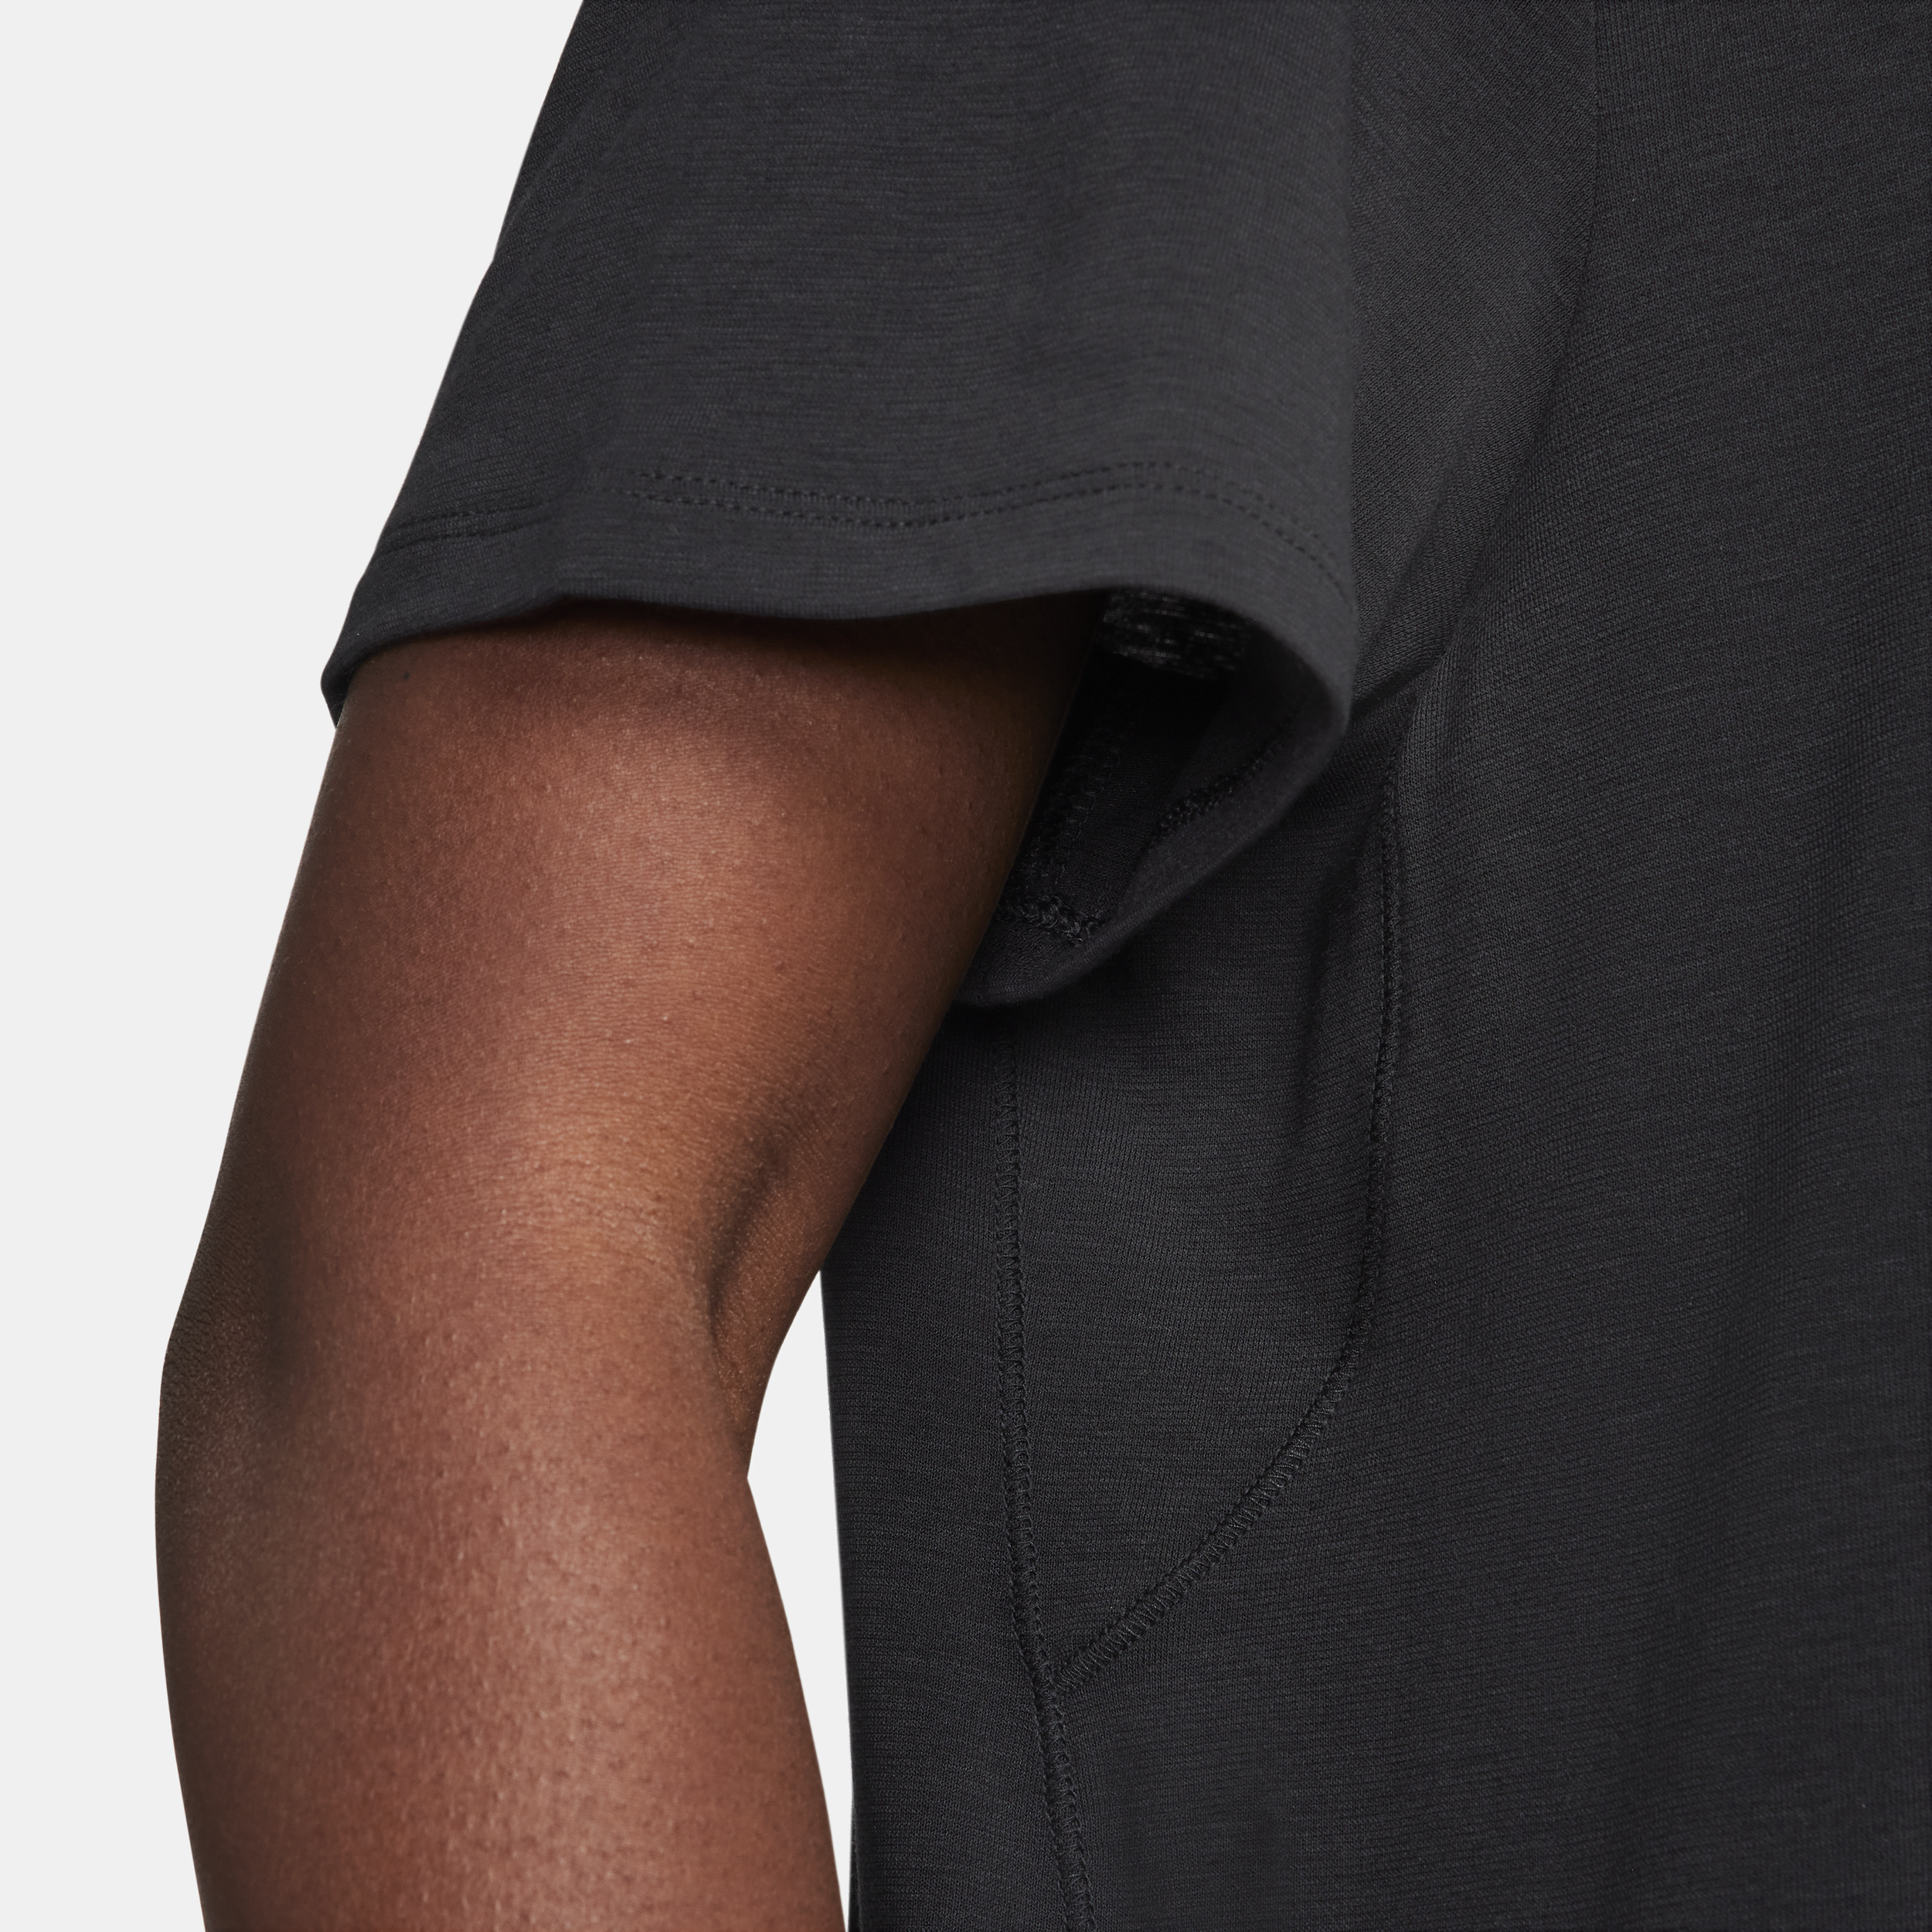 Nike One Relaxed Dri-FIT damestop met korte mouwen Zwart